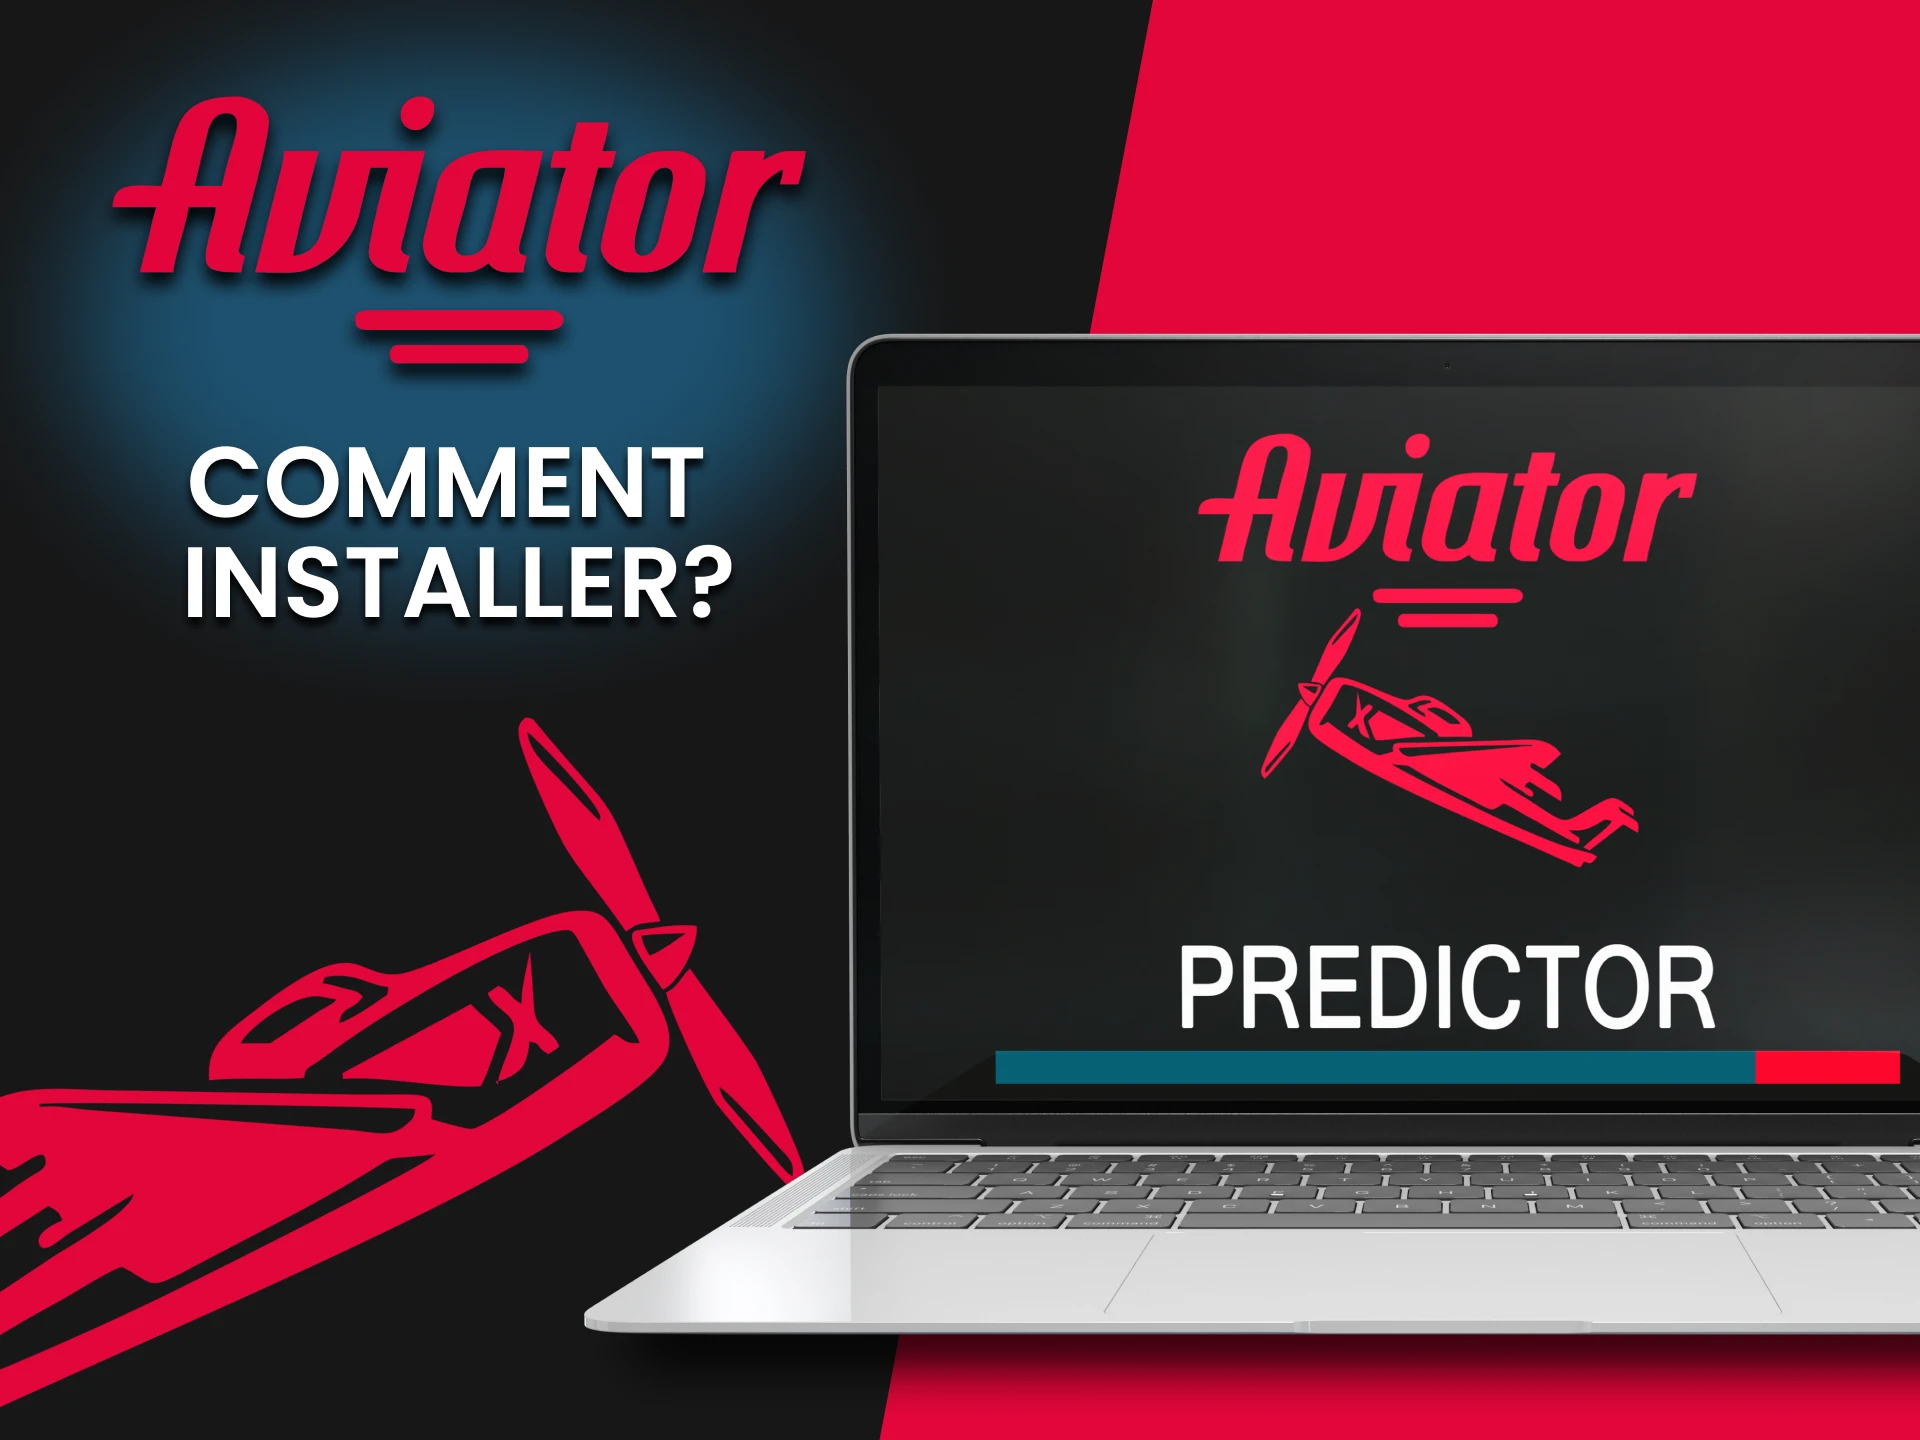 Lisez les instructions pour installer Predictor pour jouer à Aviator.